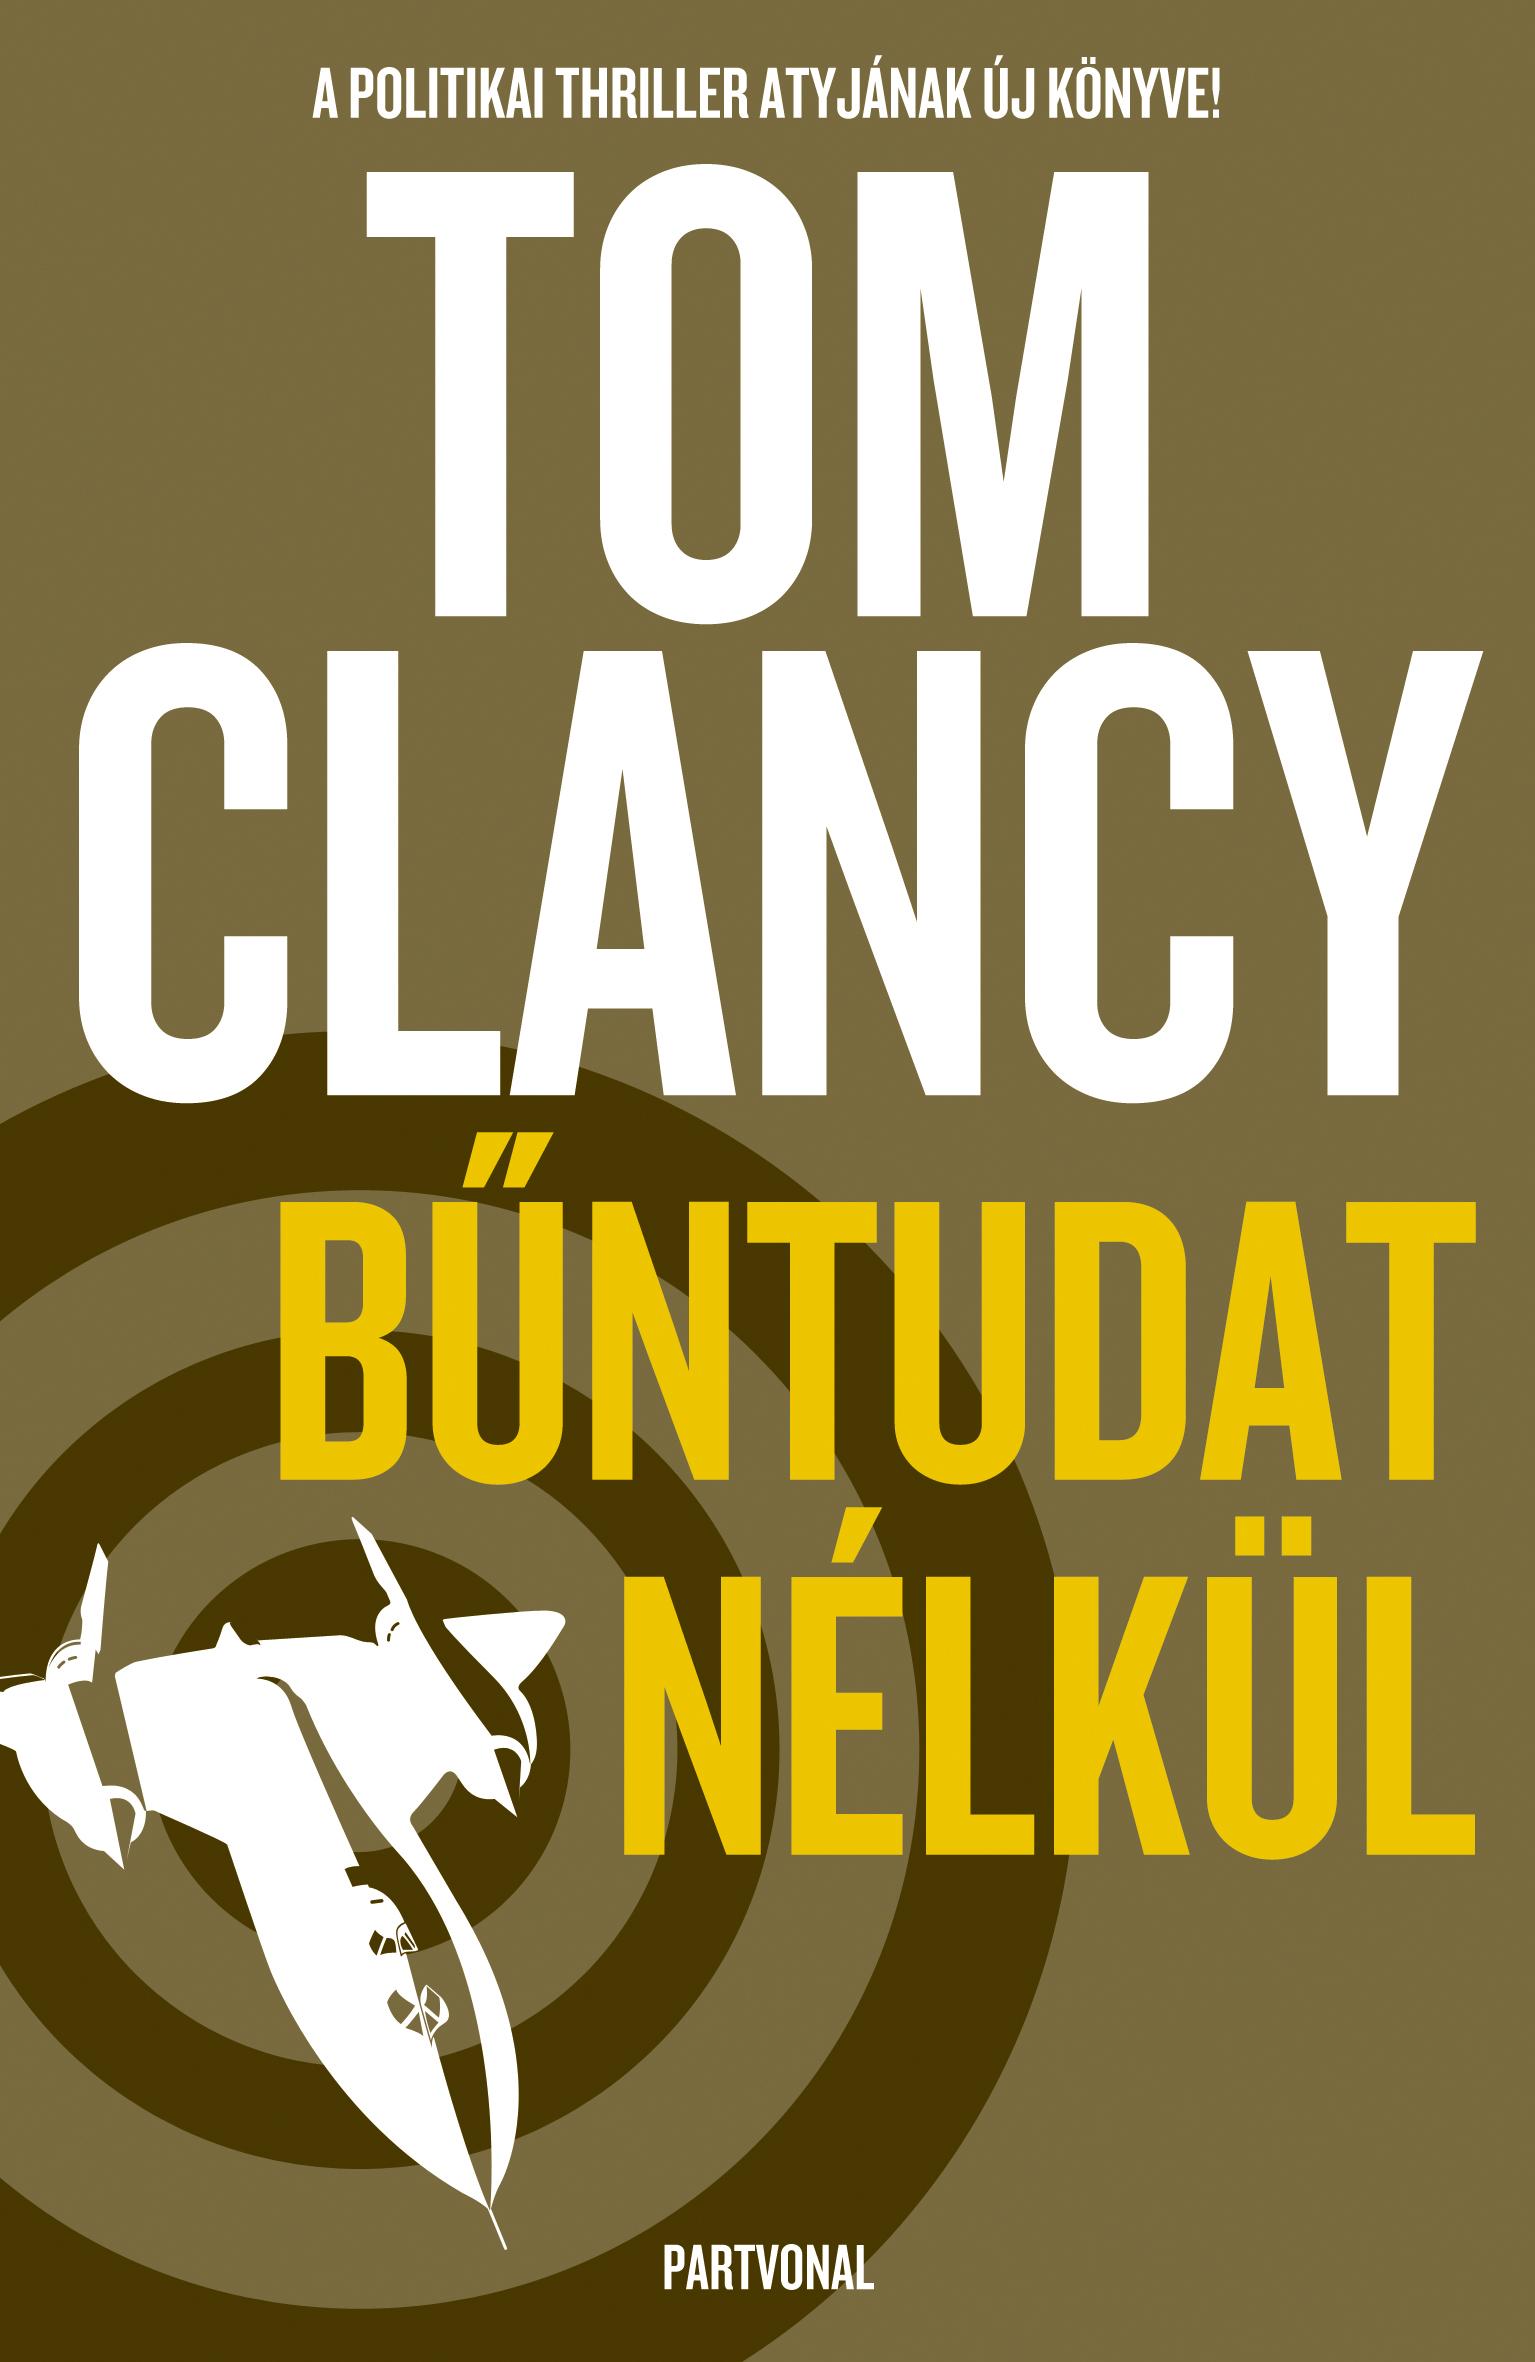 Tom Clancy - Bűntudat nélkül